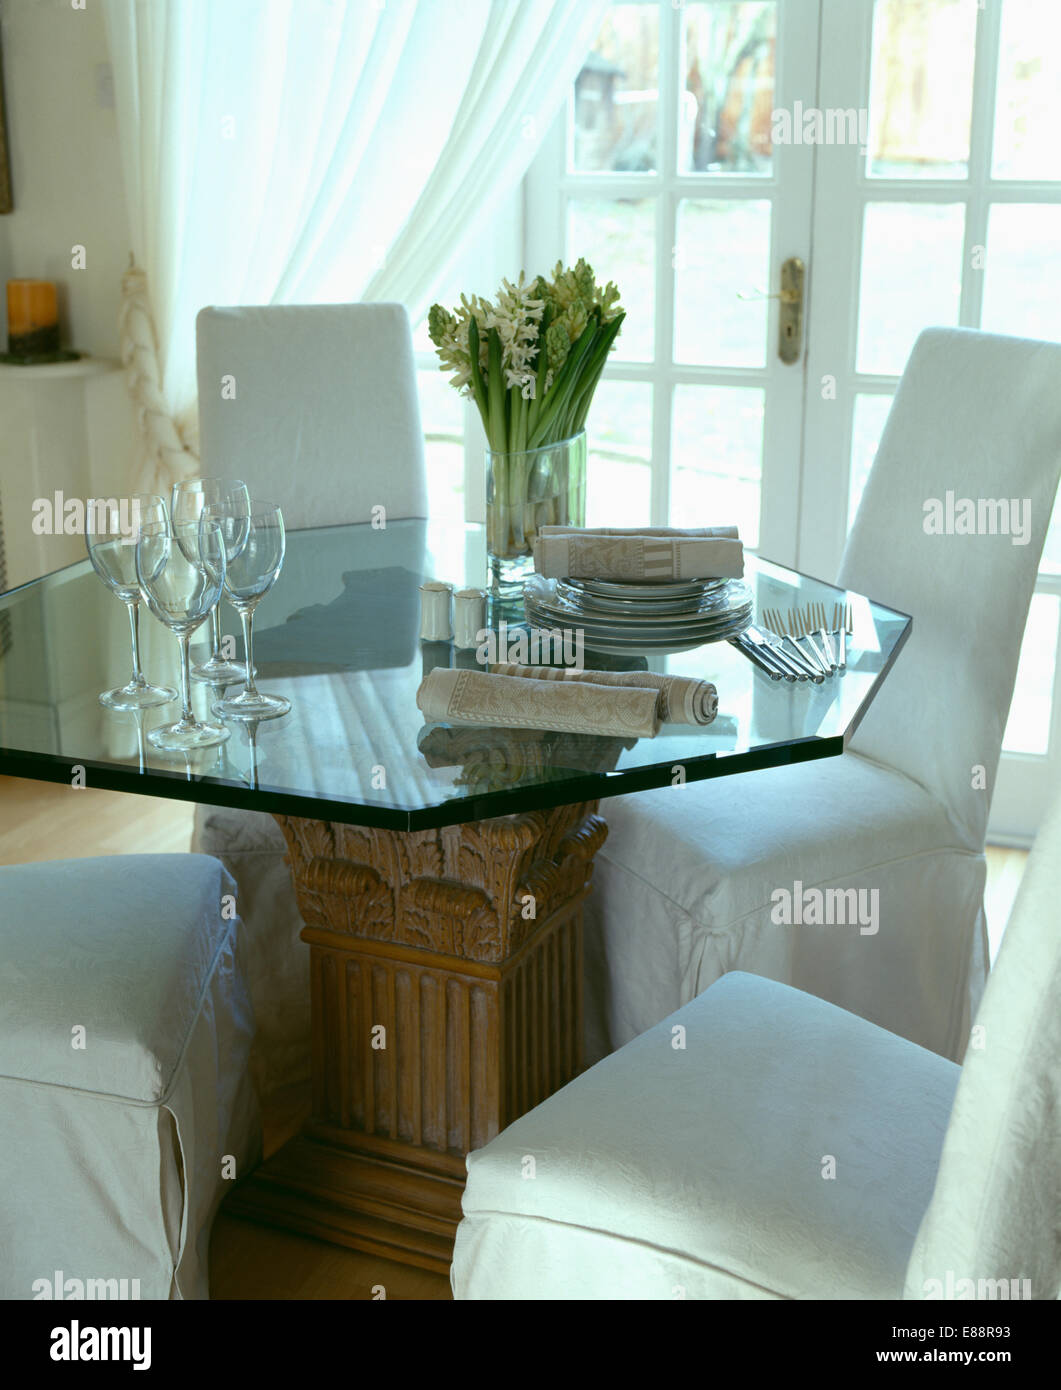 Meuble blanc-couvre sur les fauteuils et table en verre hexagonal en salle à manger convertie de garage Banque D'Images